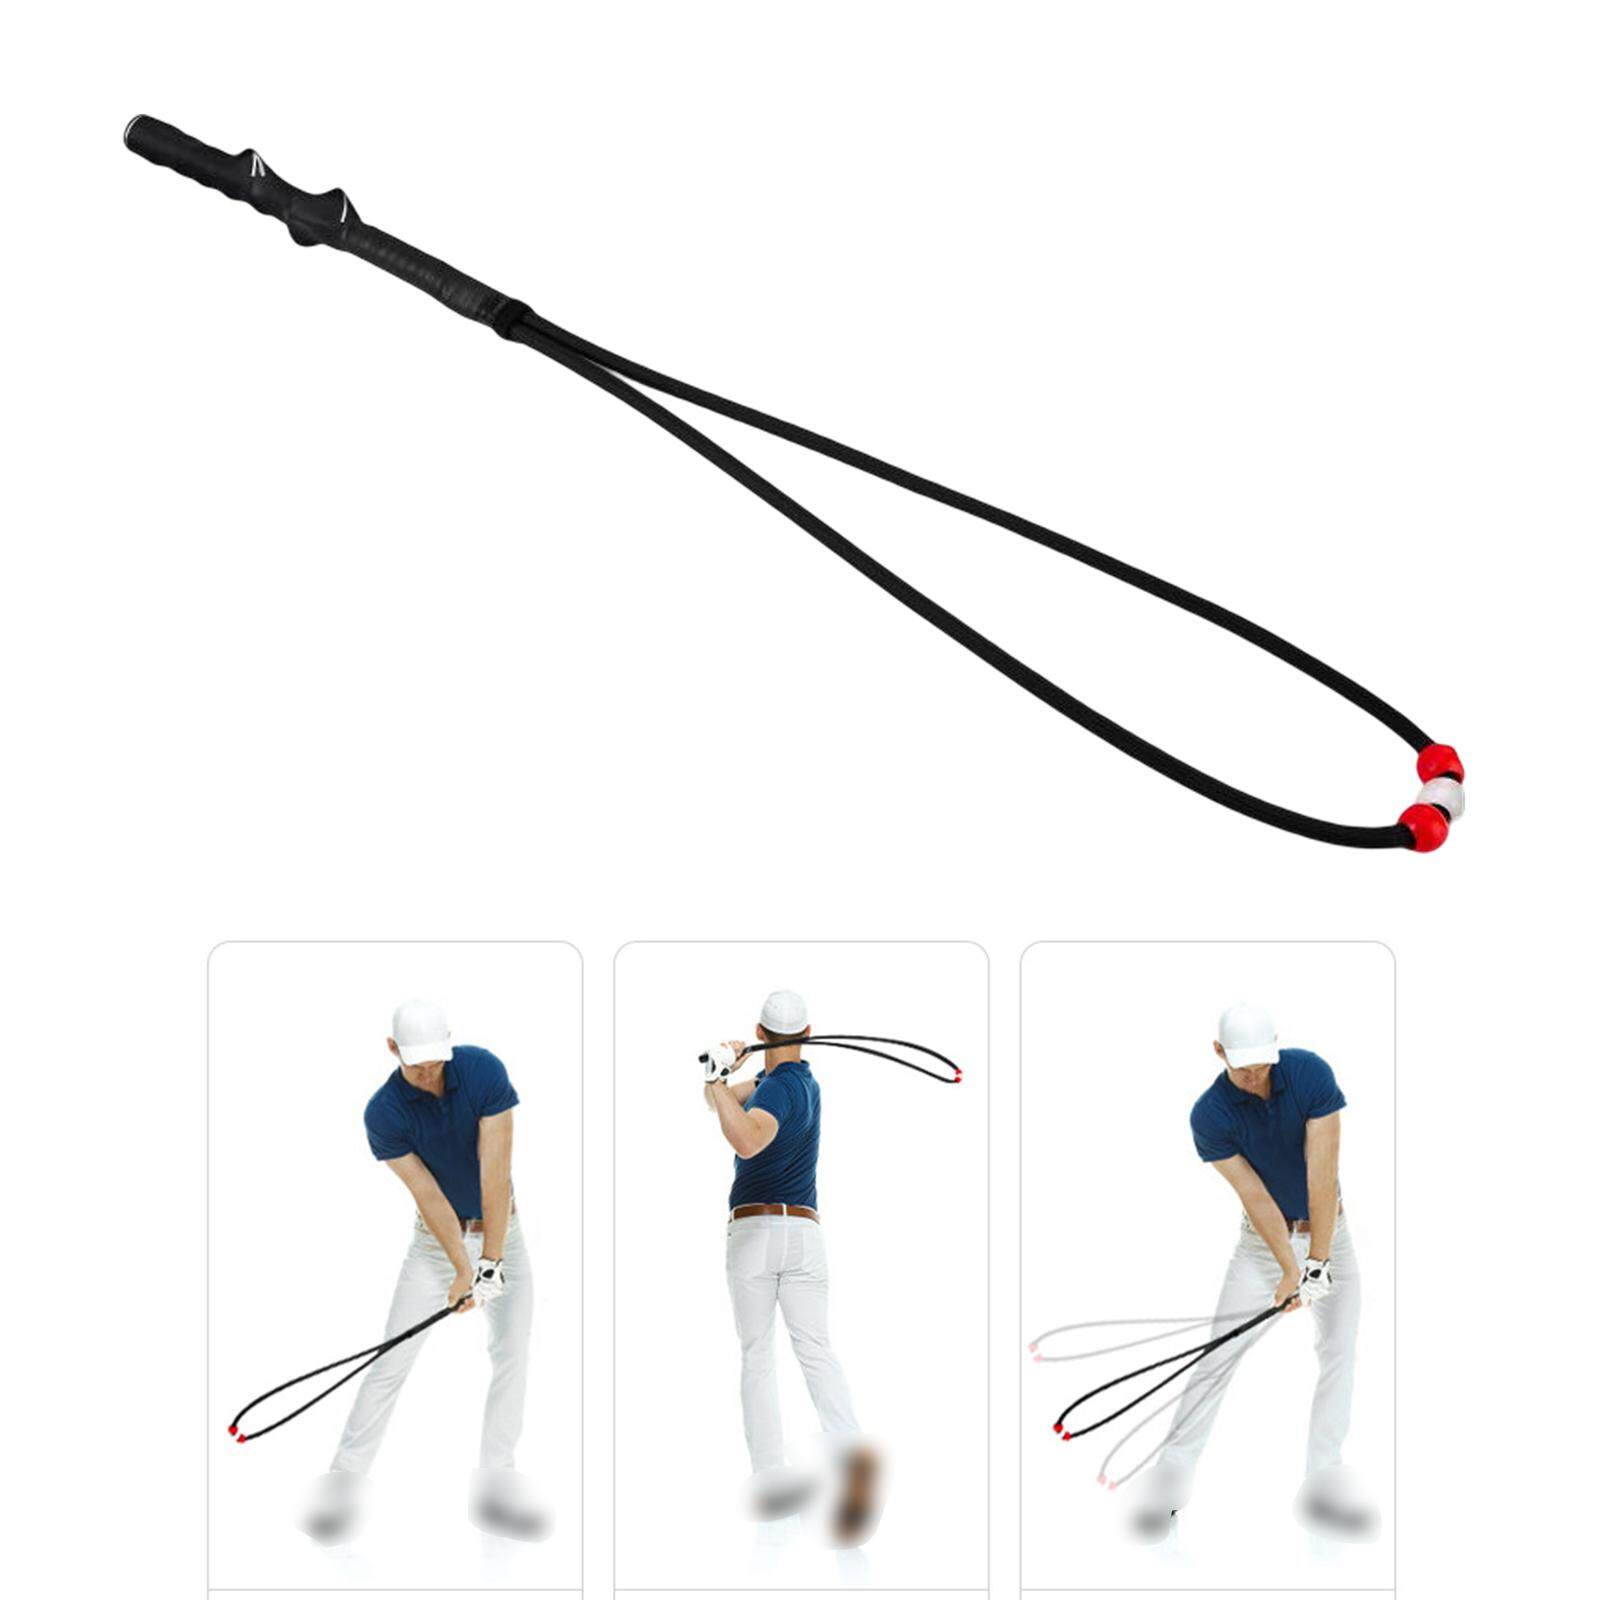 Dây Tập Swing Kèm Tay Năm Kỹ Thuật - PGM Golf Swing Physical Fitness Rope - HGB014